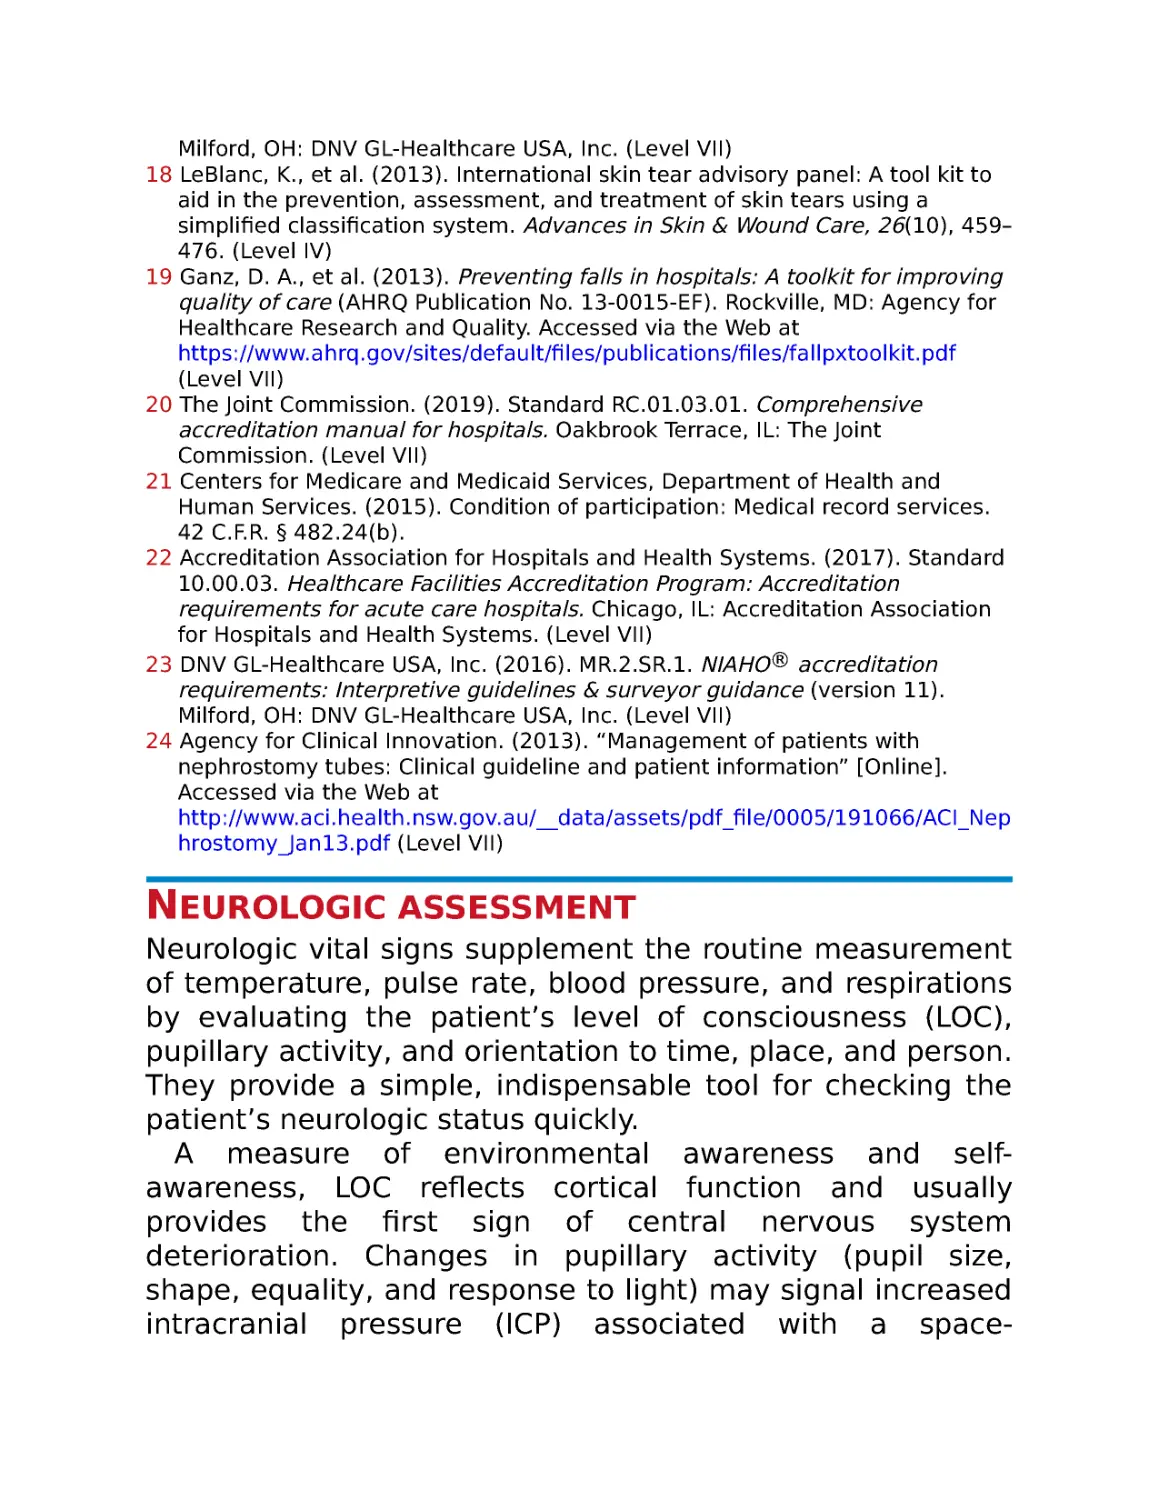 Neurologic assessment